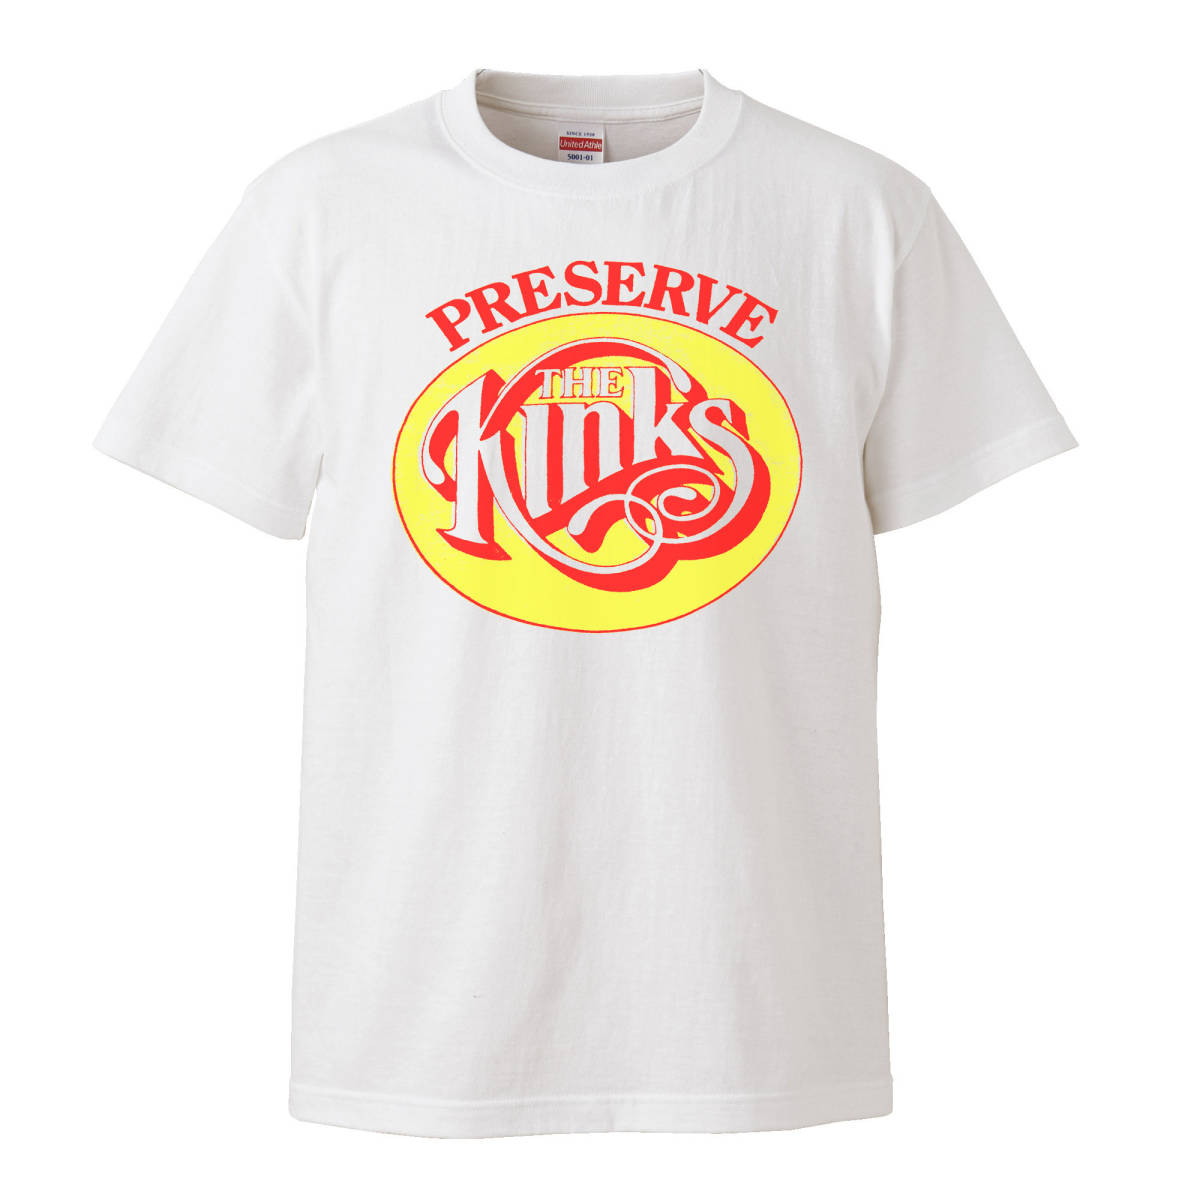 【Sサイズ 白Tシャツ】The Kinks キンクス Preservation Act 1 サイケデリック UKロック LP CD レコード ビンテージ MODS モッズ 60s 70s_画像1